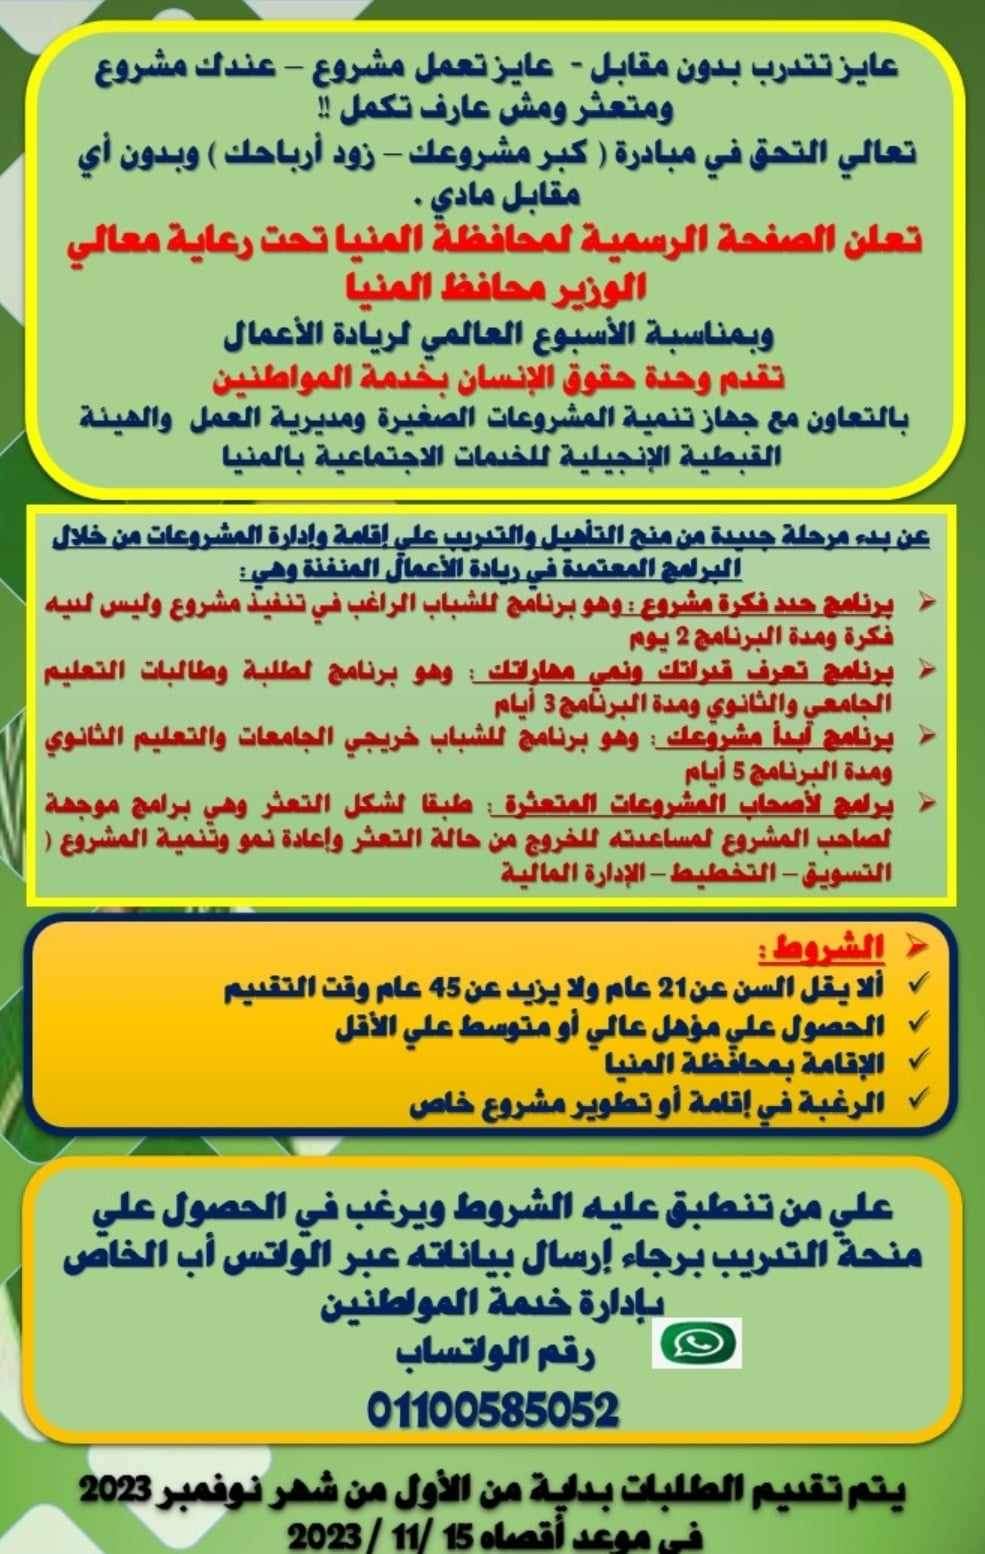 منح للتأهيل والتدريب على إقامة المشروعات للشباب من أبناء محافظة المنيا